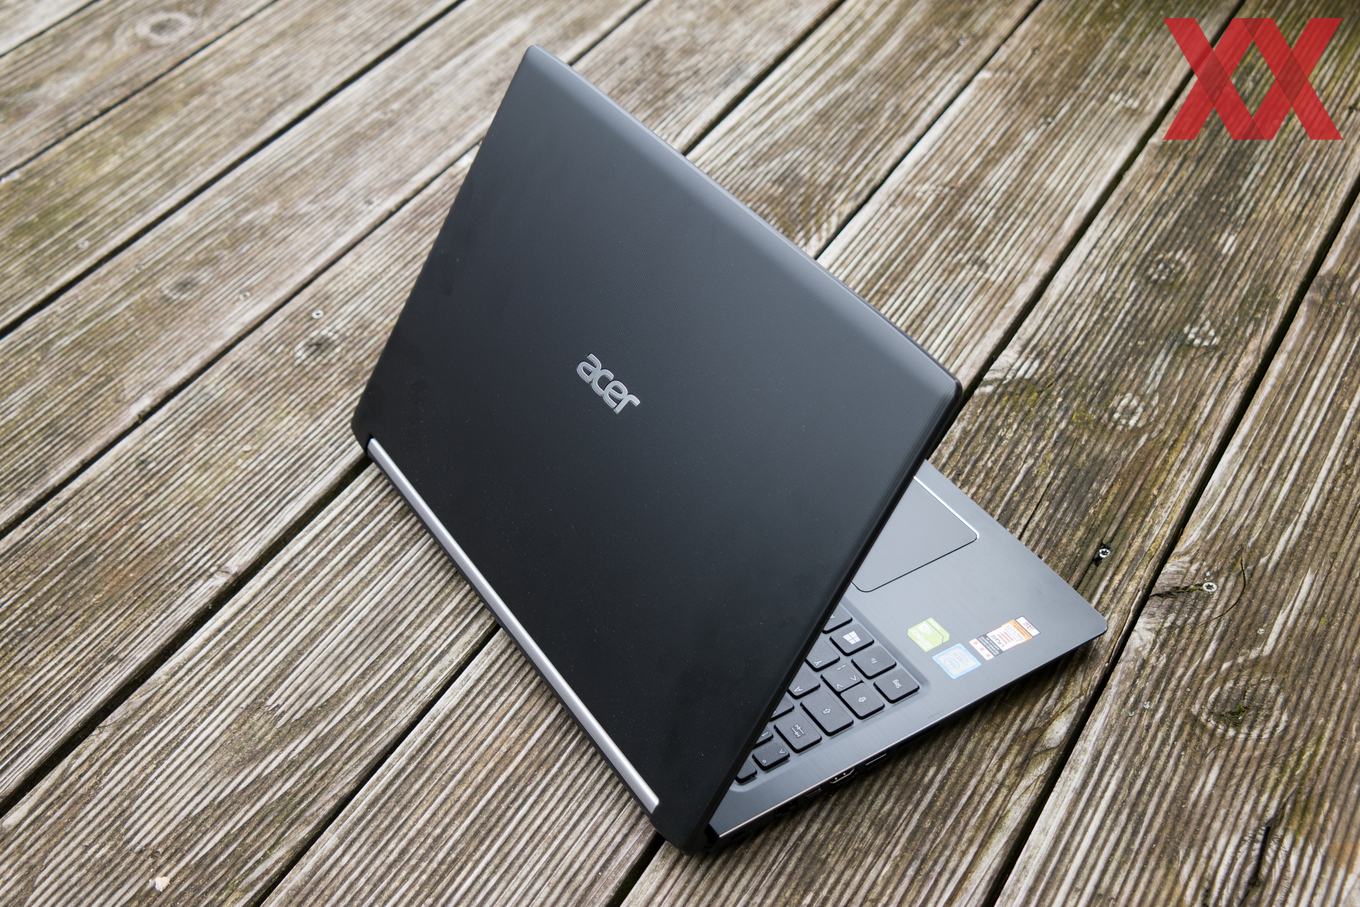 Ноутбуки Acer Intel Core I5 Цена